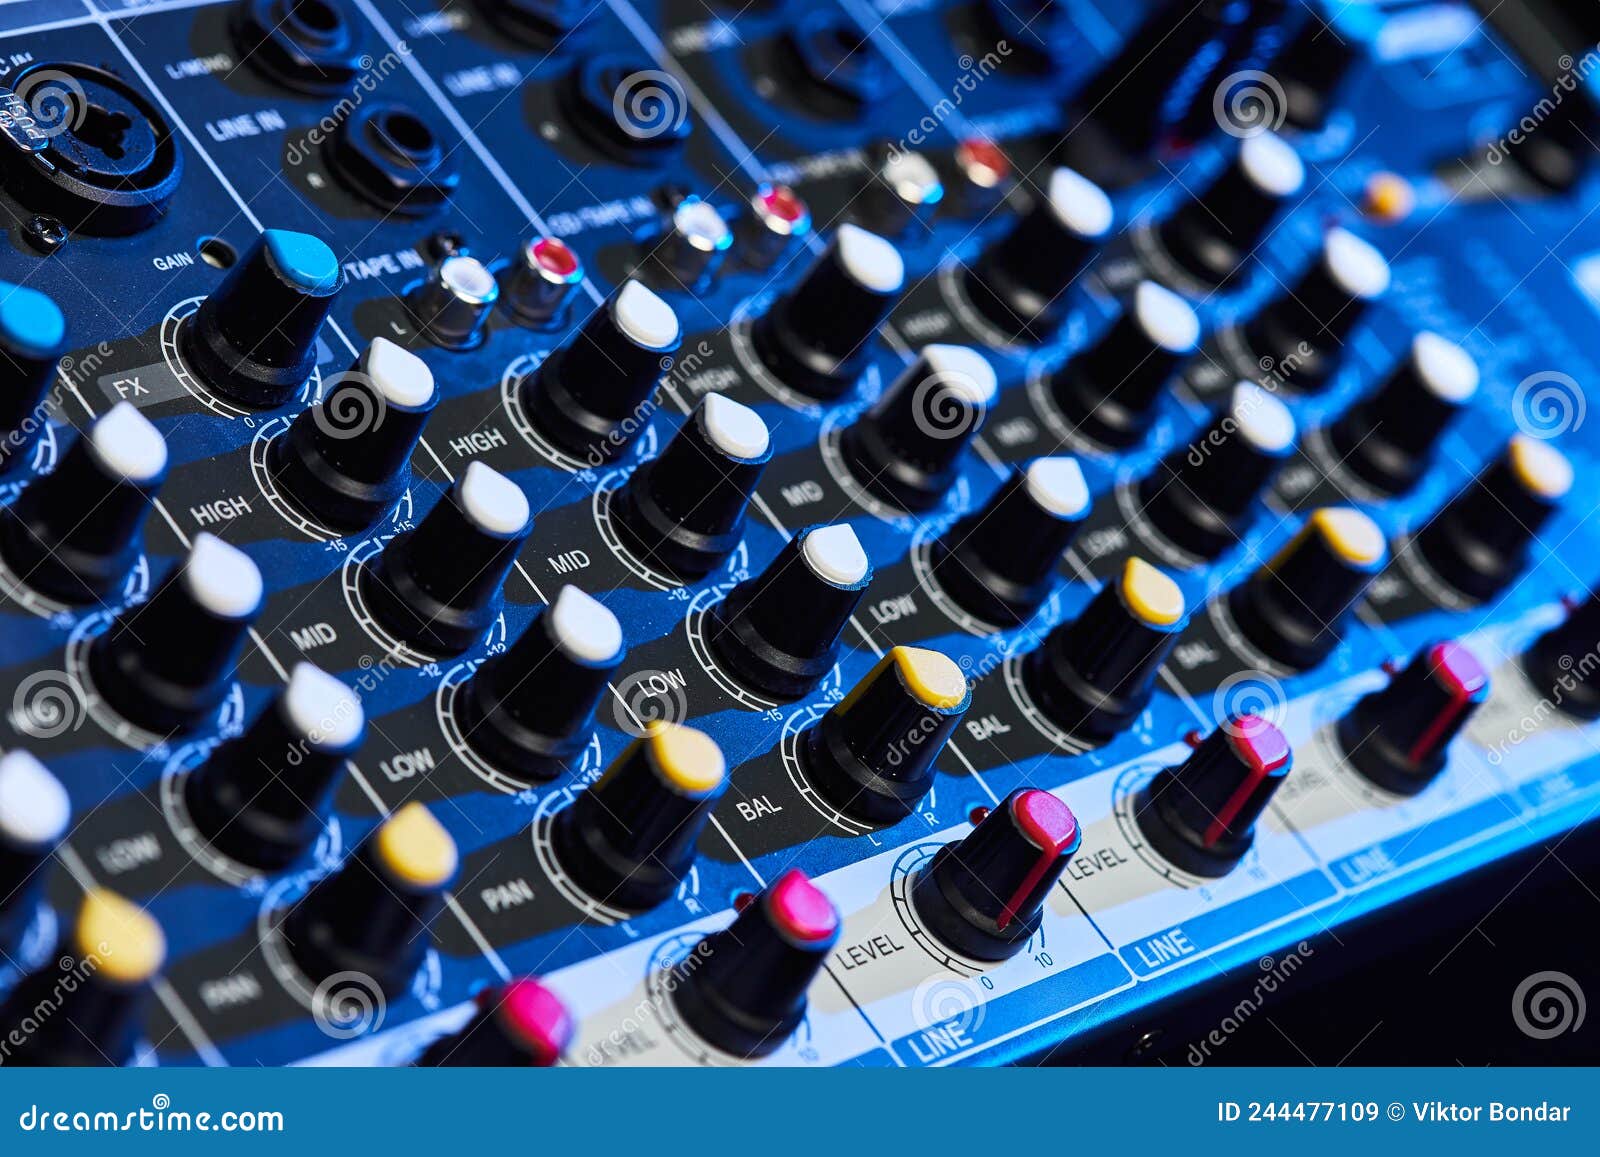 Equipo De Amplificador De Sonido De Audio Concepto De Ingeniería De Mezcla  Musical Acústica. Controlador De Sonido Para Dominar La Imagen de archivo -  Imagen de sonido, volumen: 244477109